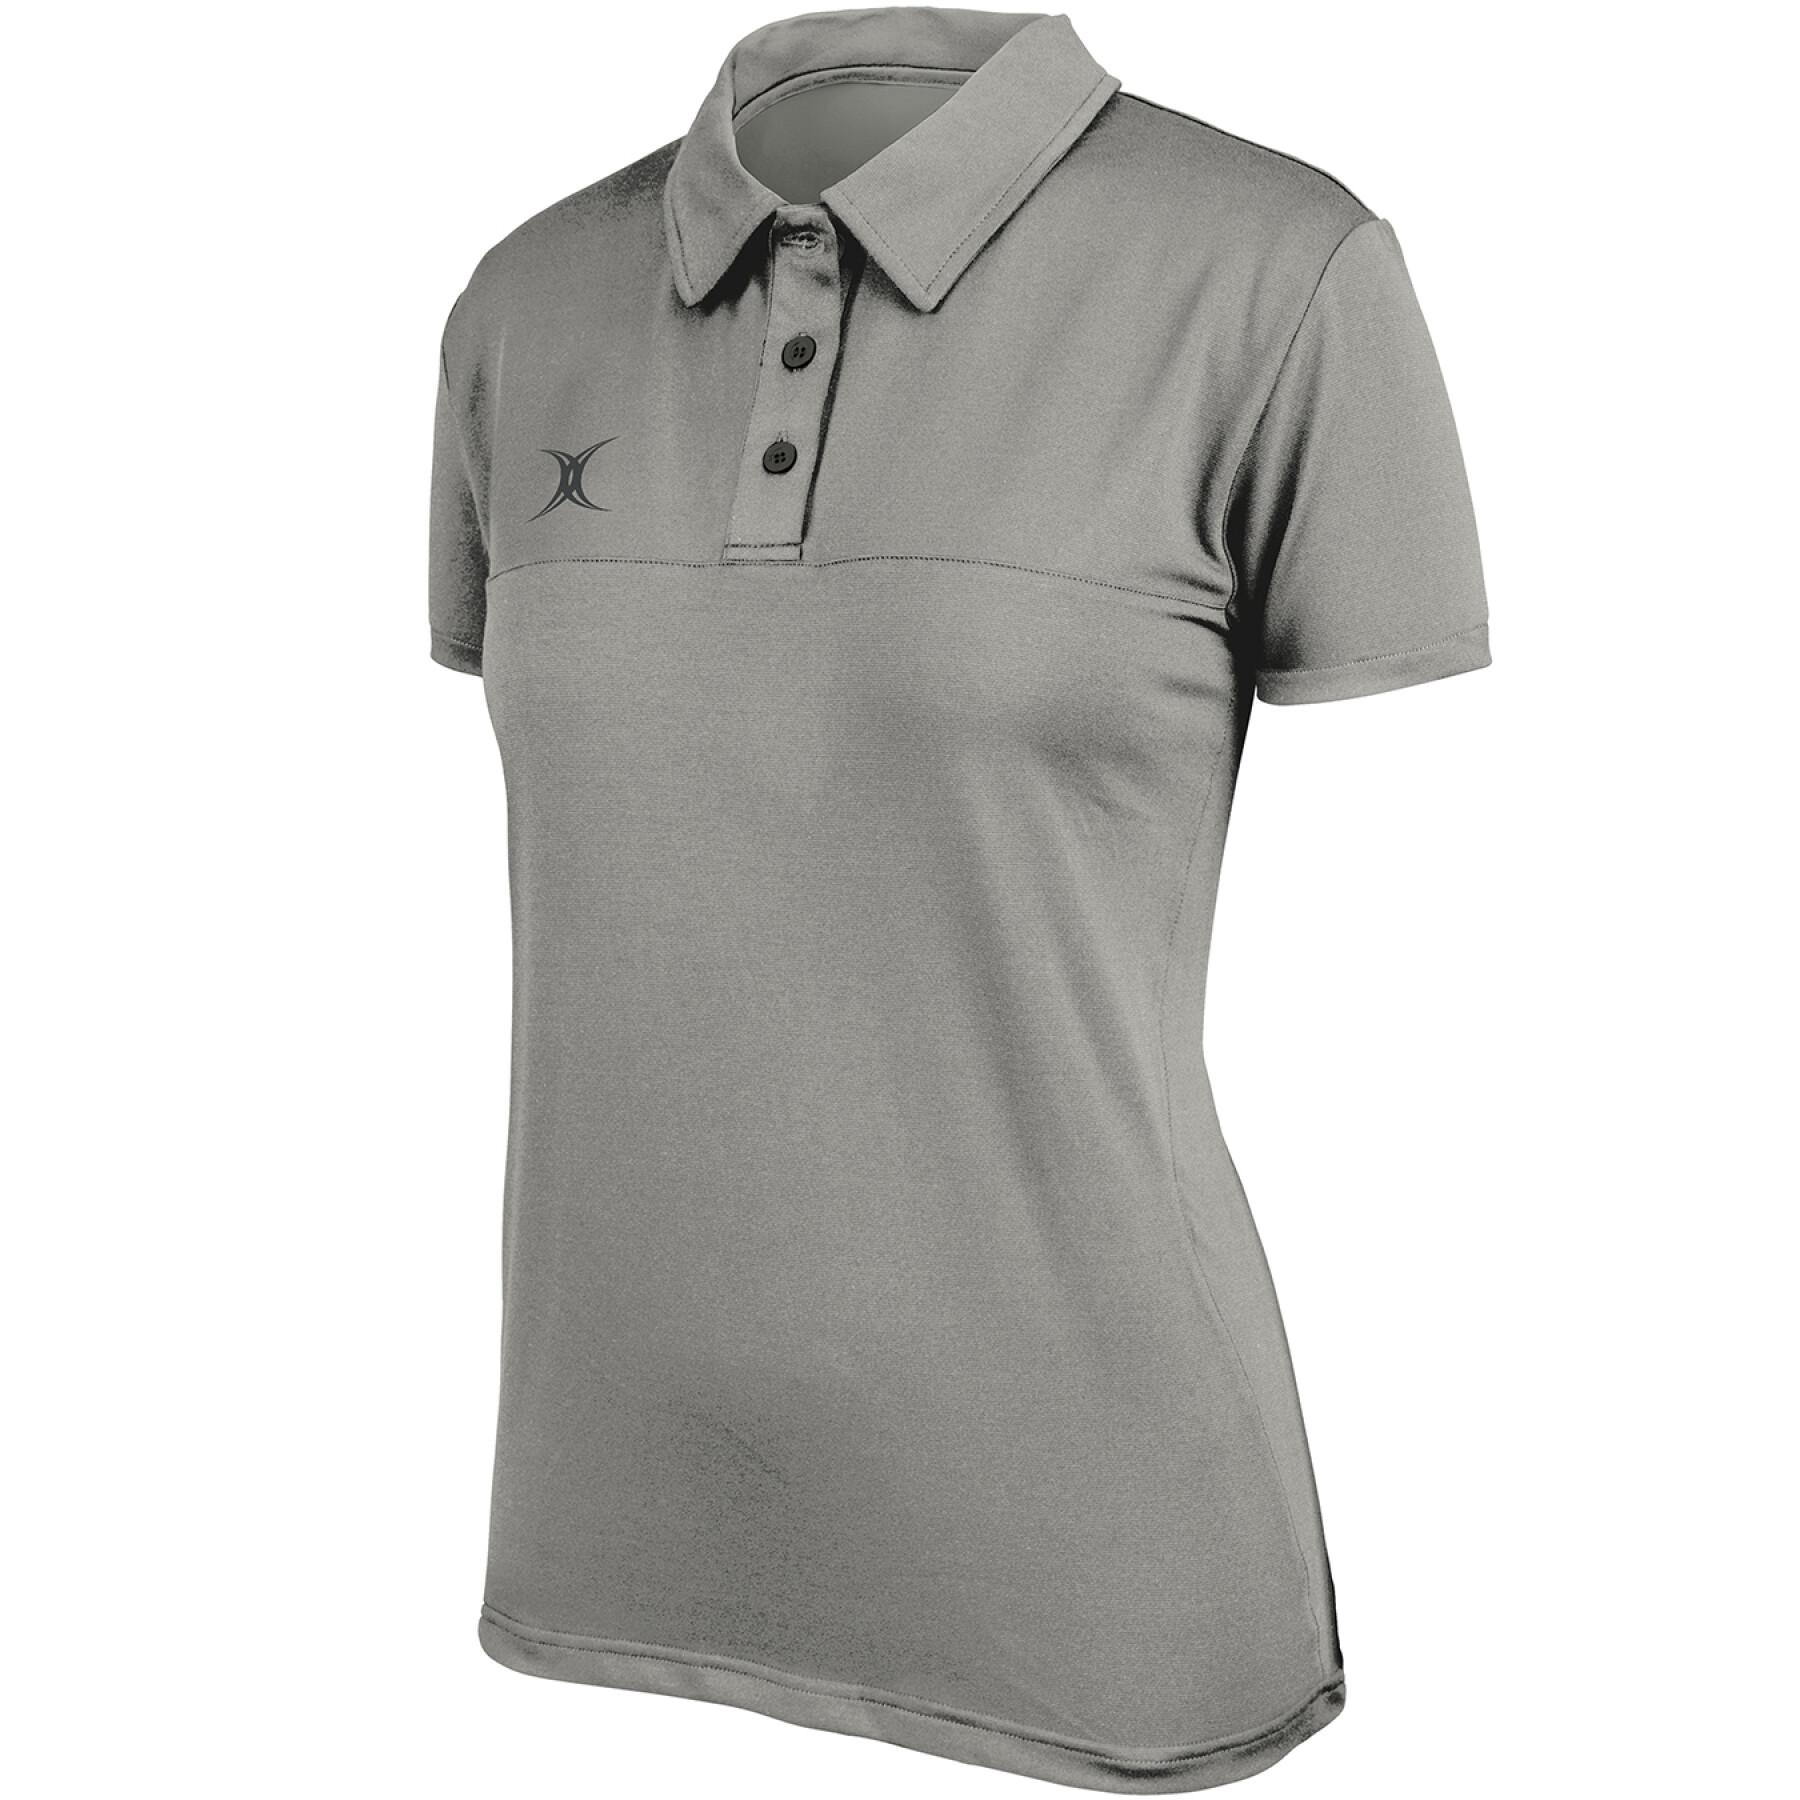 Women's polo shirt Gilbert Pro